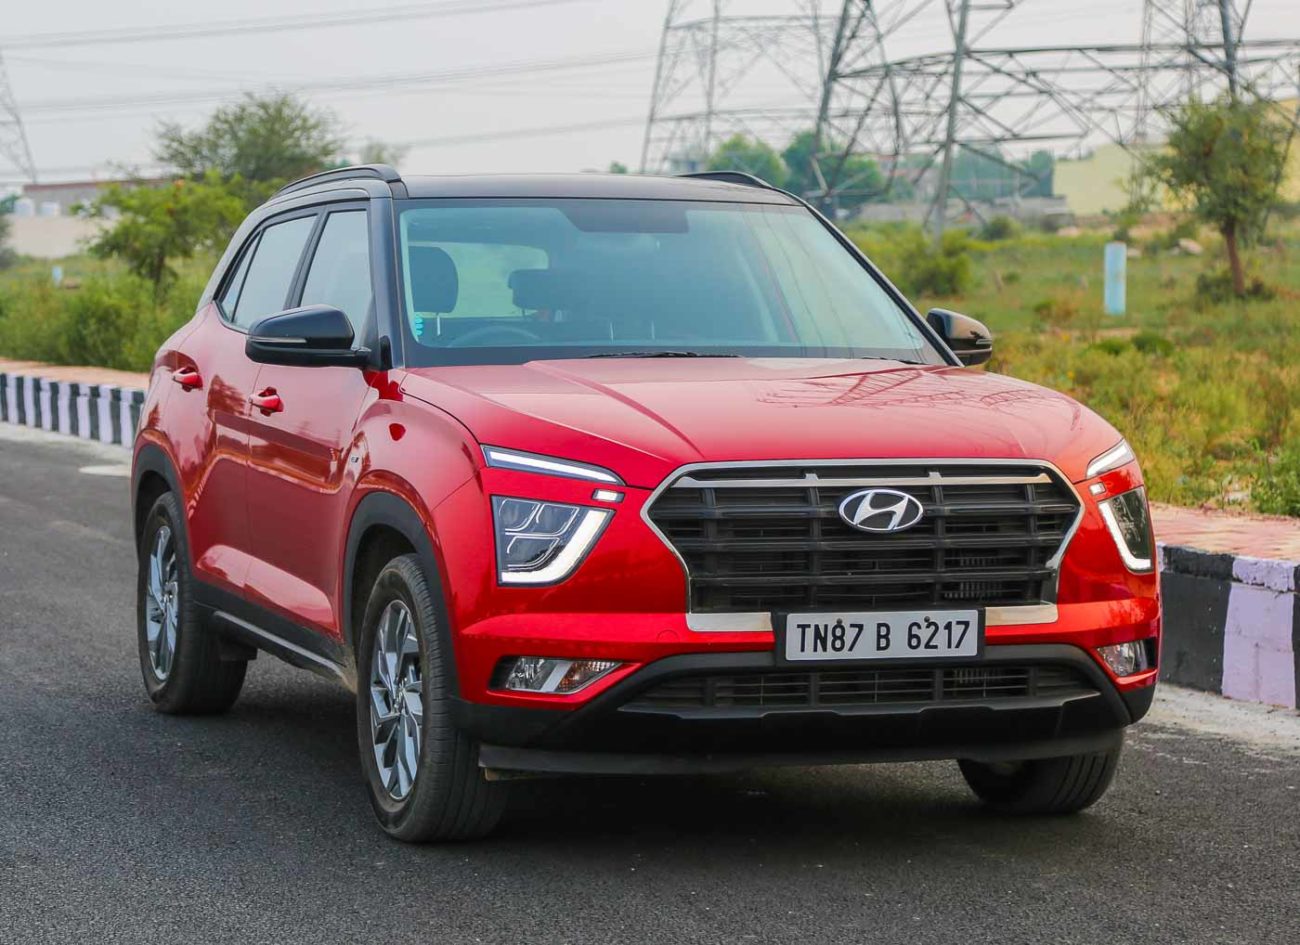 New Hyundai Creta Crosses 1.15 Lakh Bookings In India